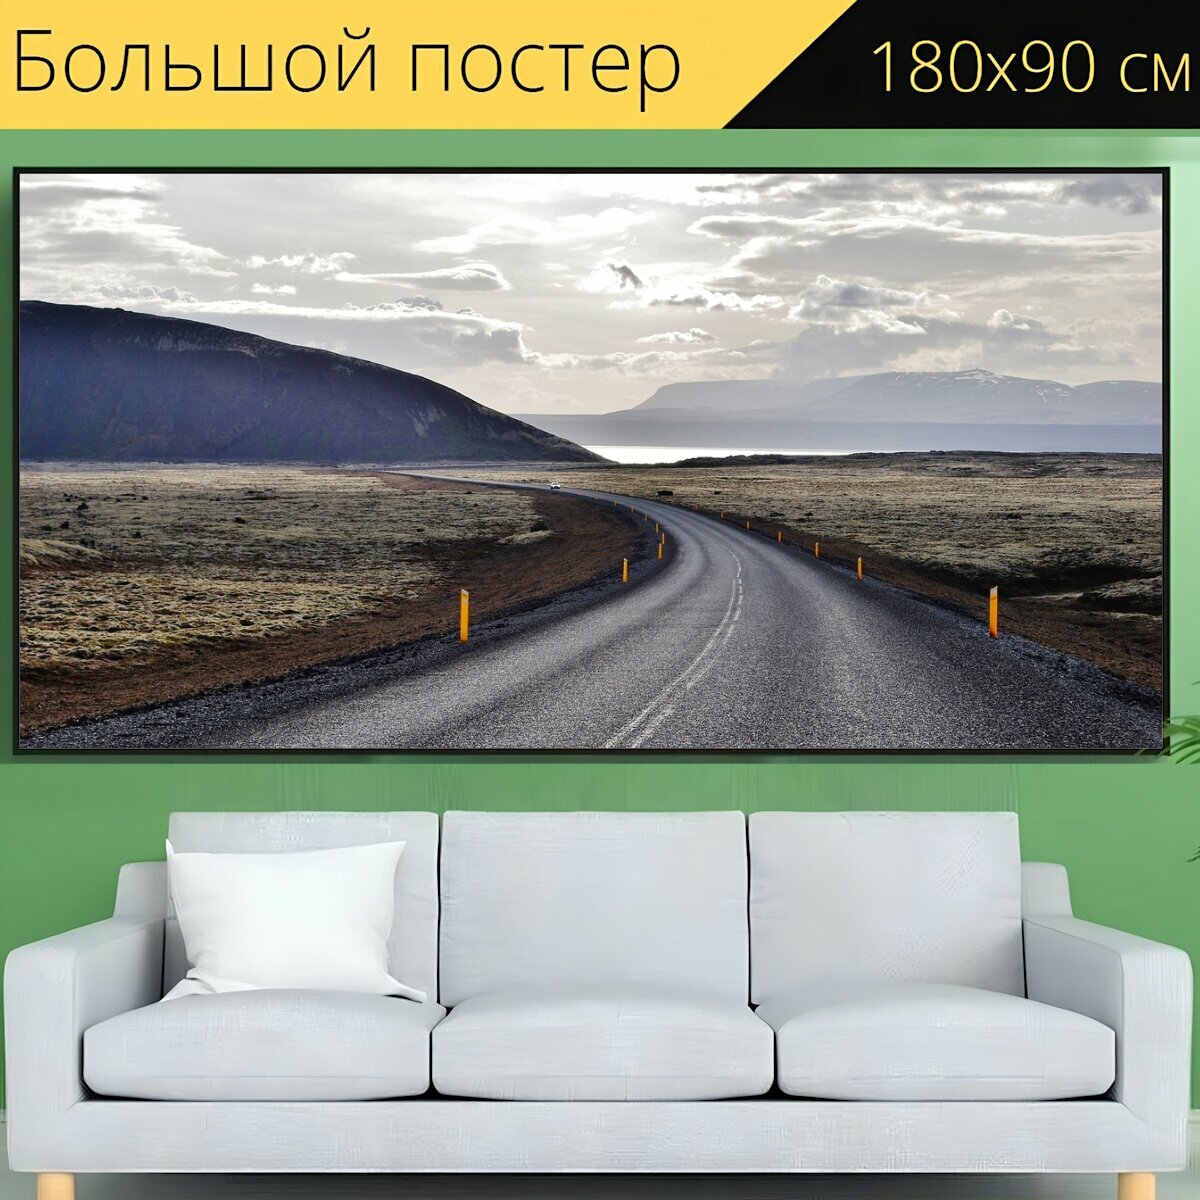 Большой постер "Дорога, панорамный, путешествовать" 180 x 90 см. для интерьера